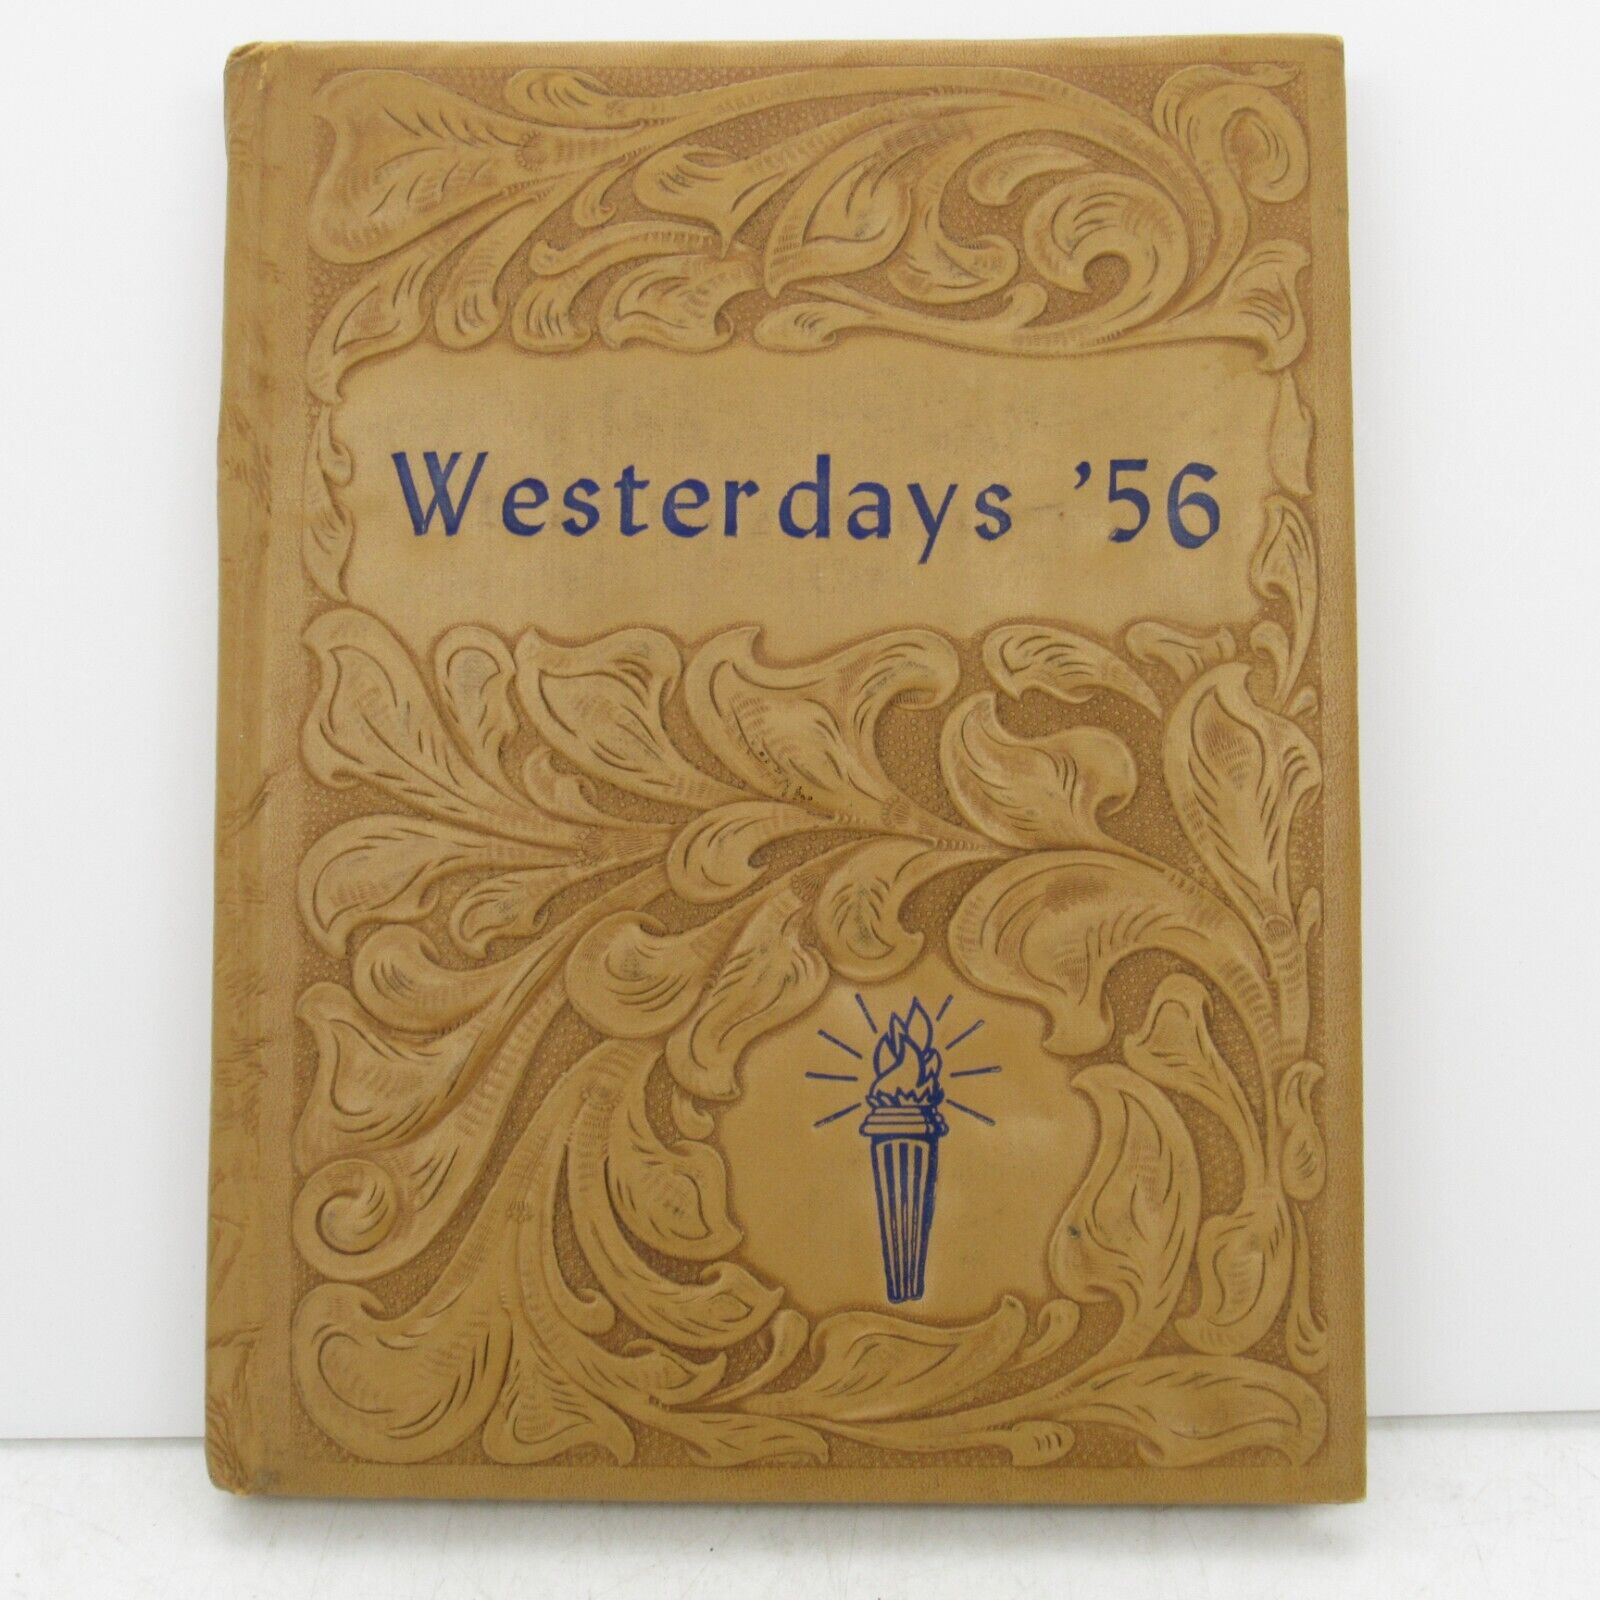 1956 Westerdays - West Senior High School Yearbook - Pawtucket, Rhode Island 1